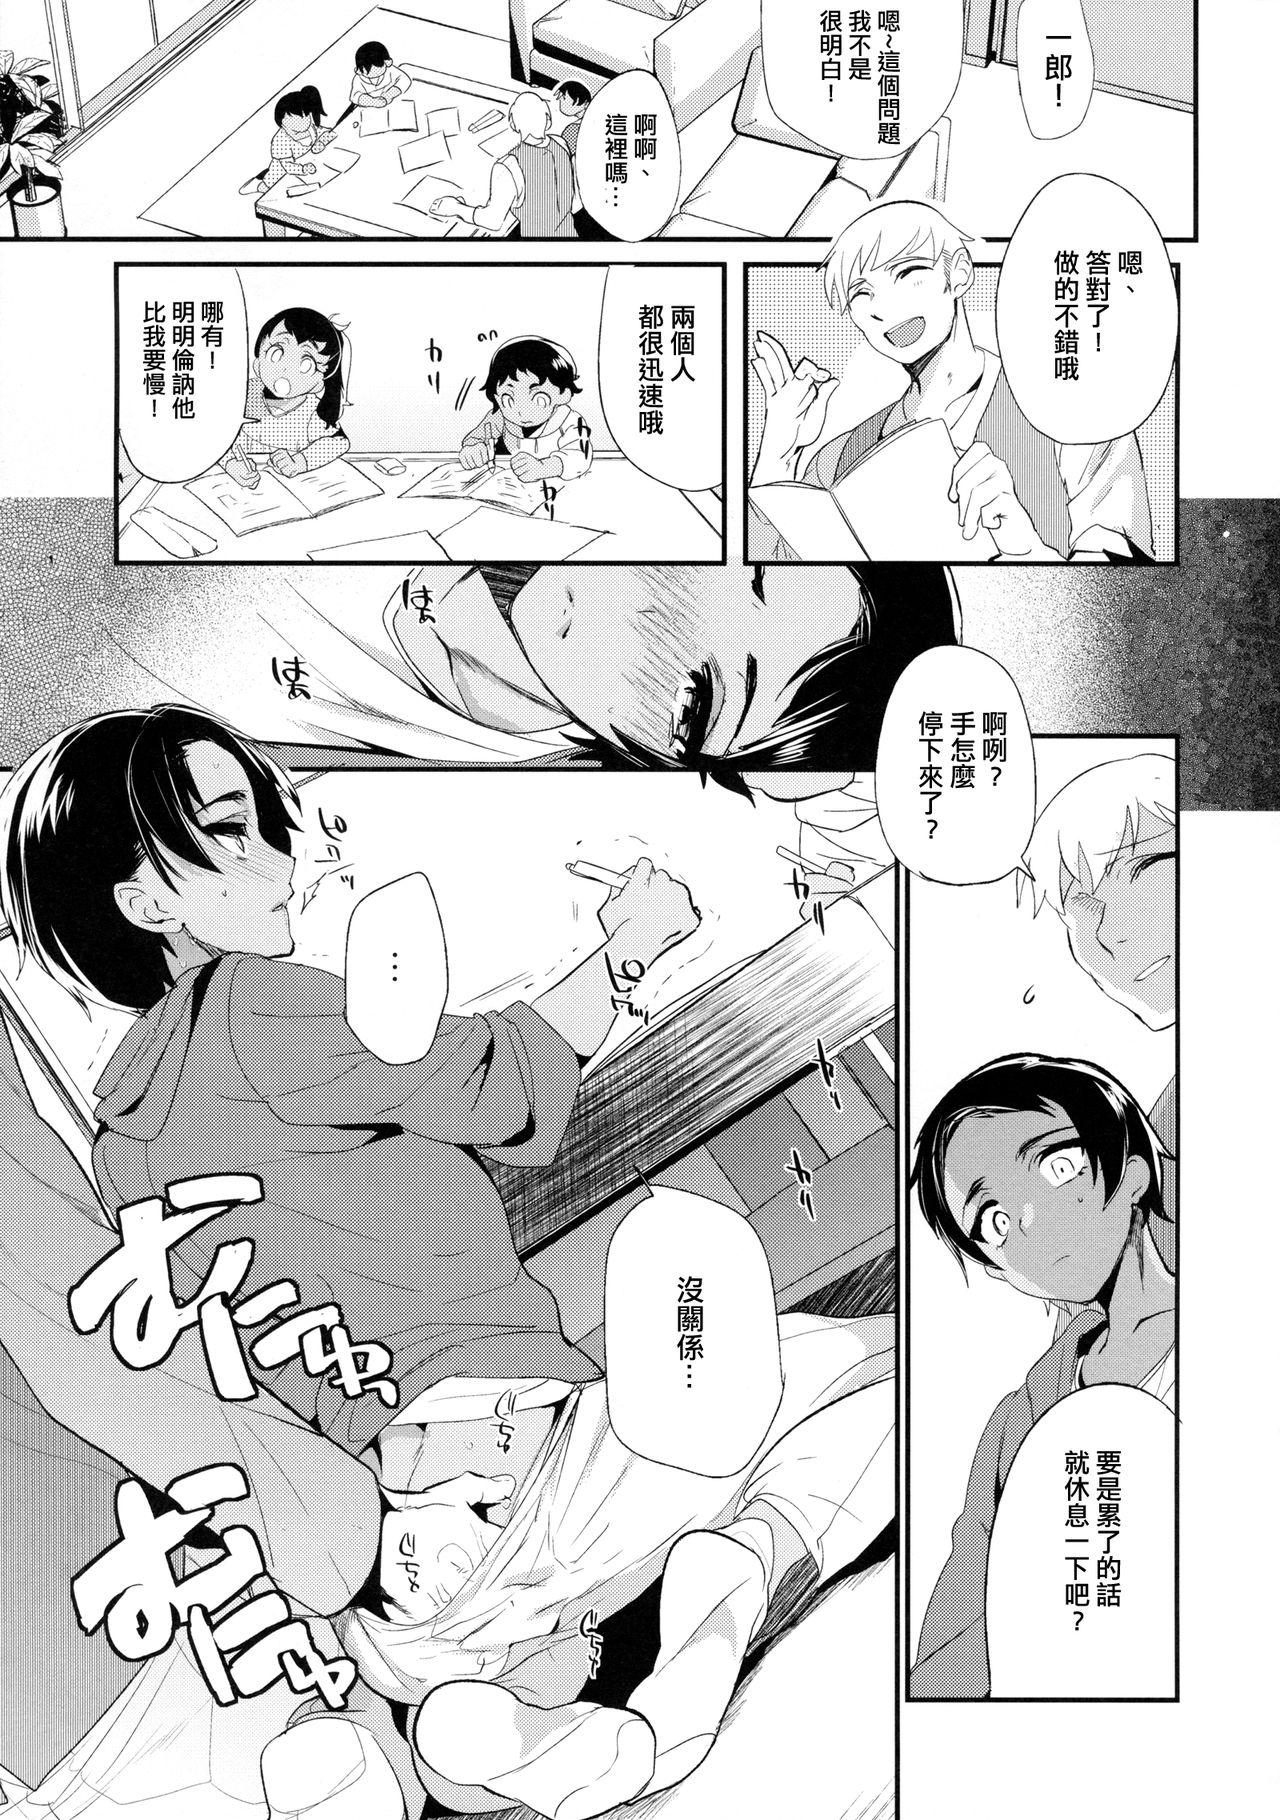 Massage Creep Kore wa Futsuu no Koto dakara - Original Cavalgando - Page 4